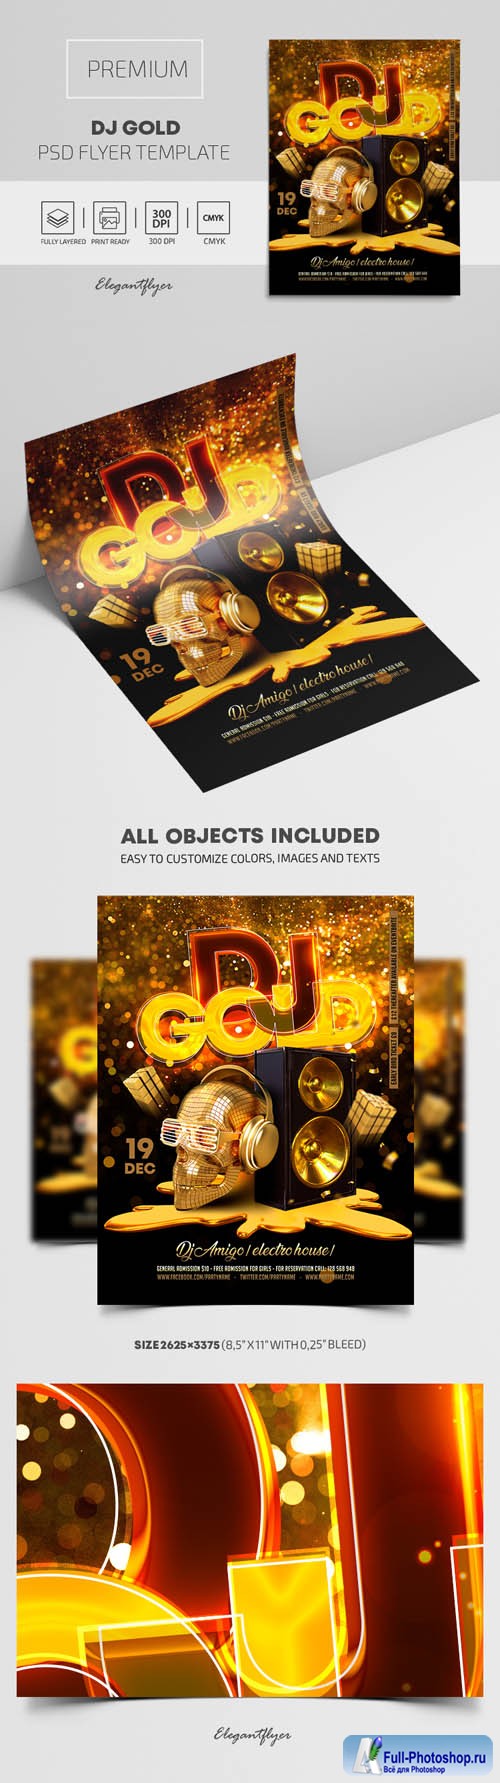 Dj Gold Premium PSD Flyer Template